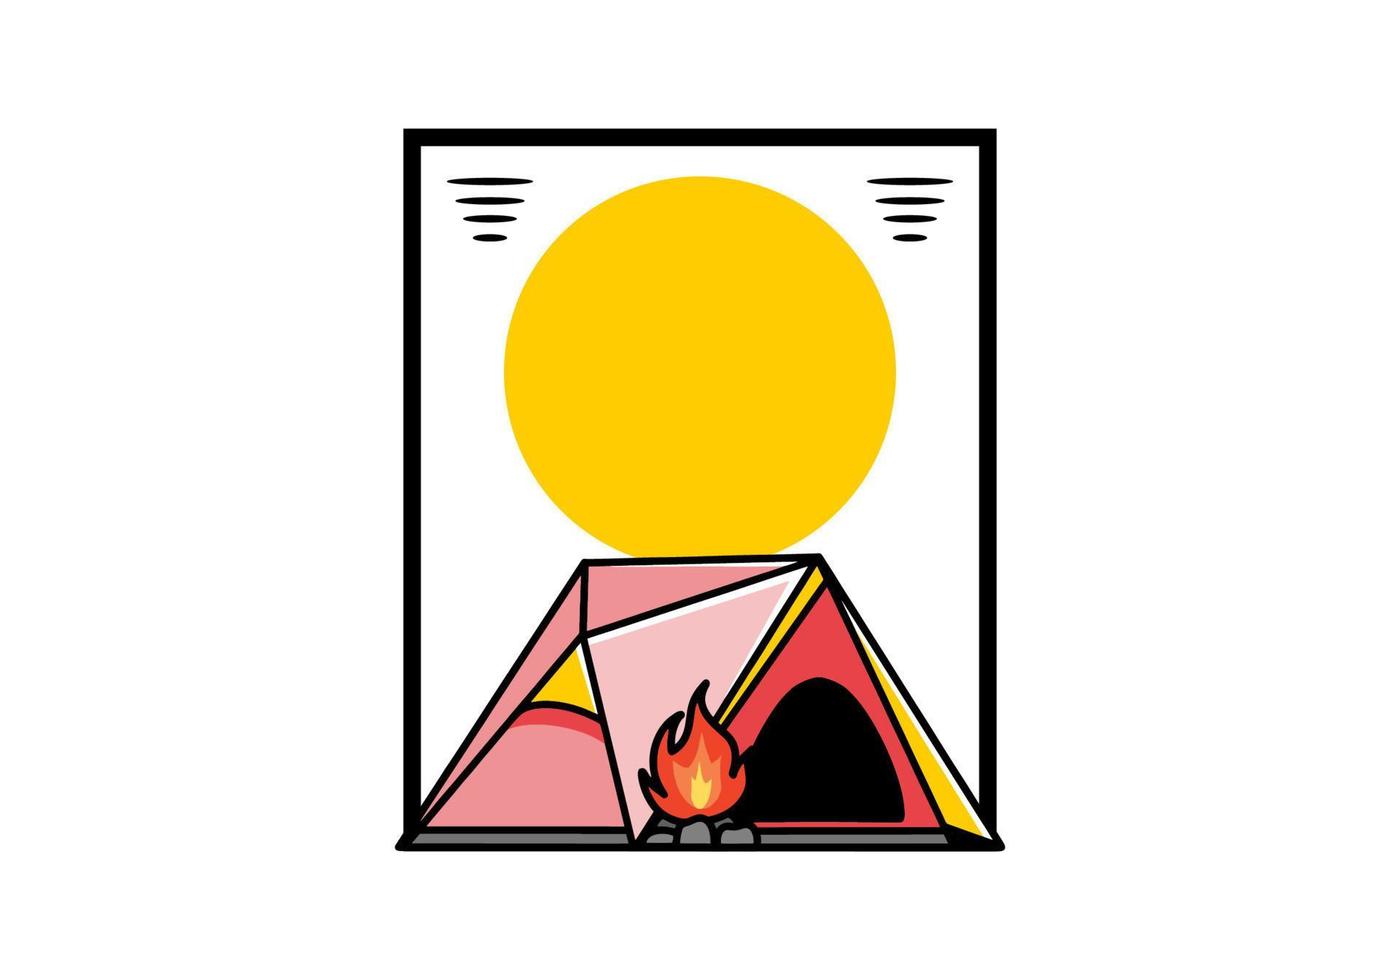 triangel camping tält och brasa illustration design vektor